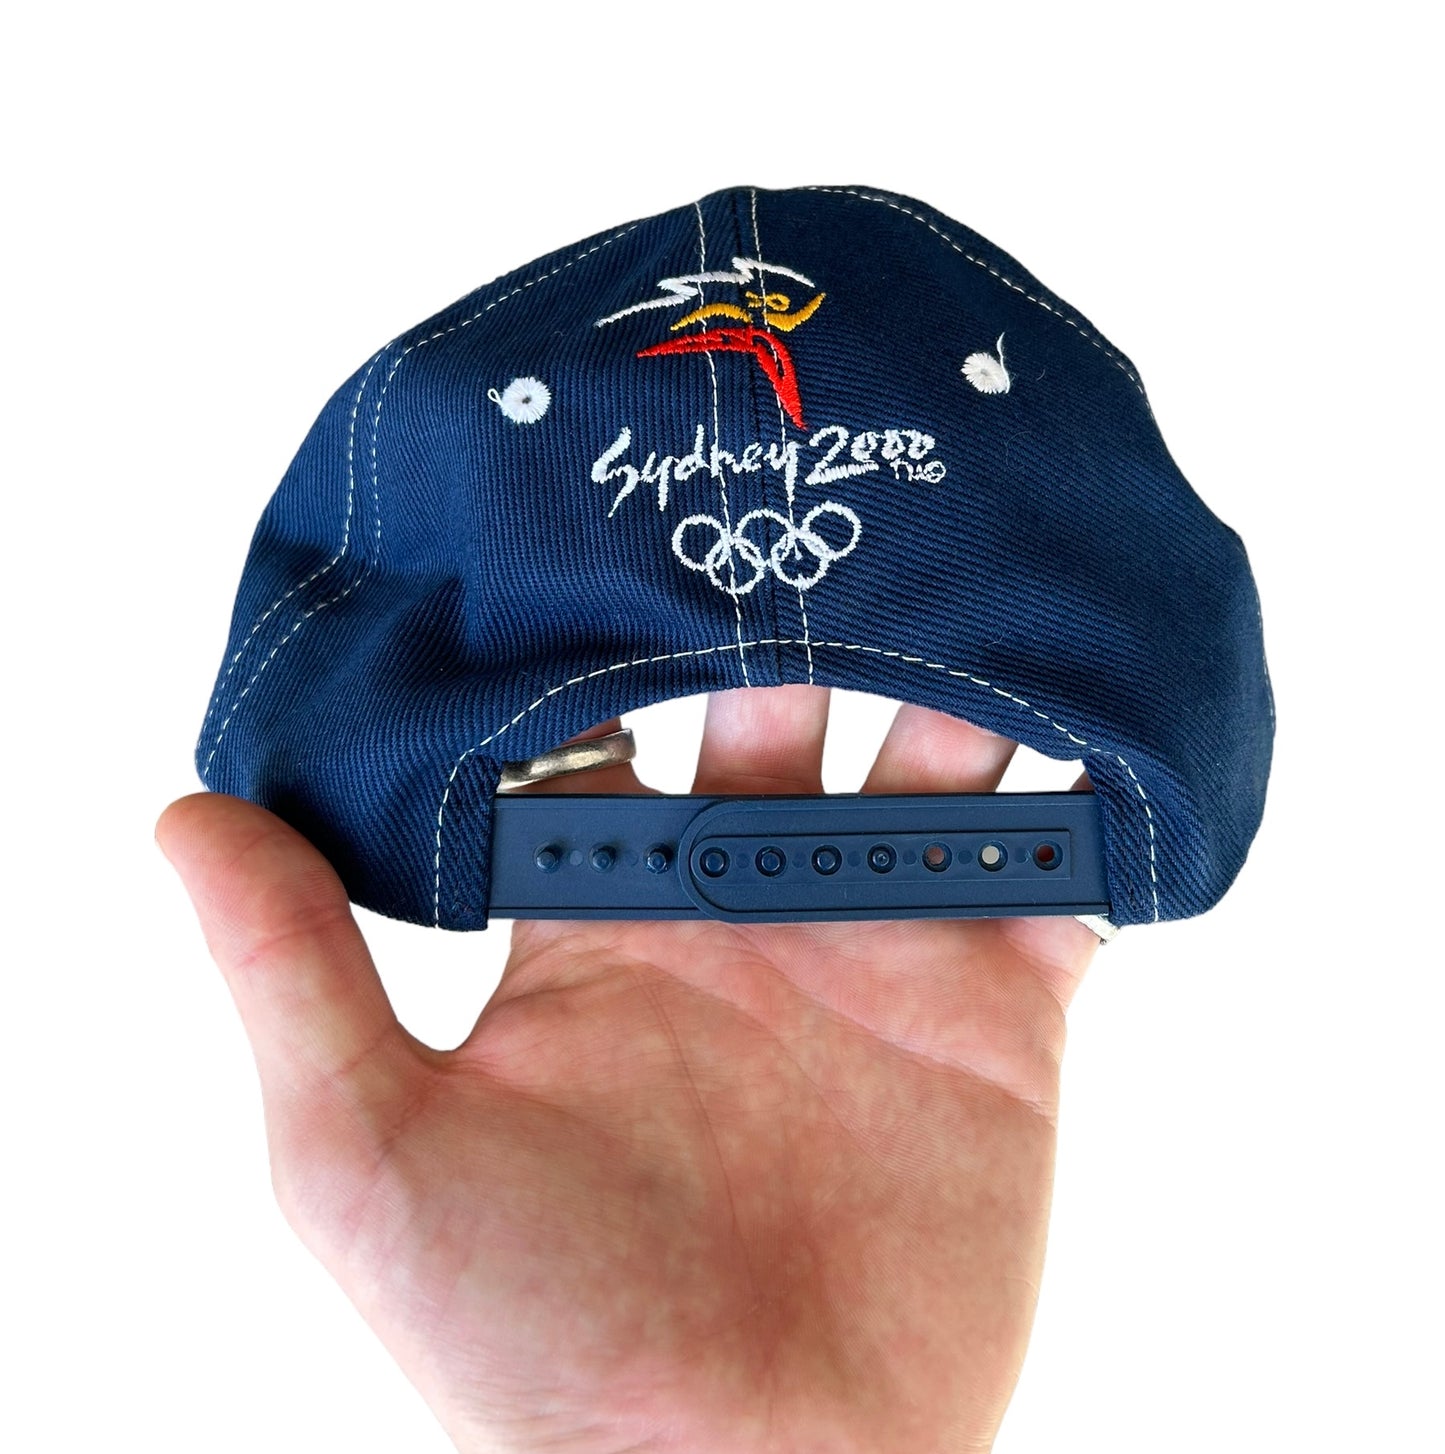 2000 Sydney Olympics Cap